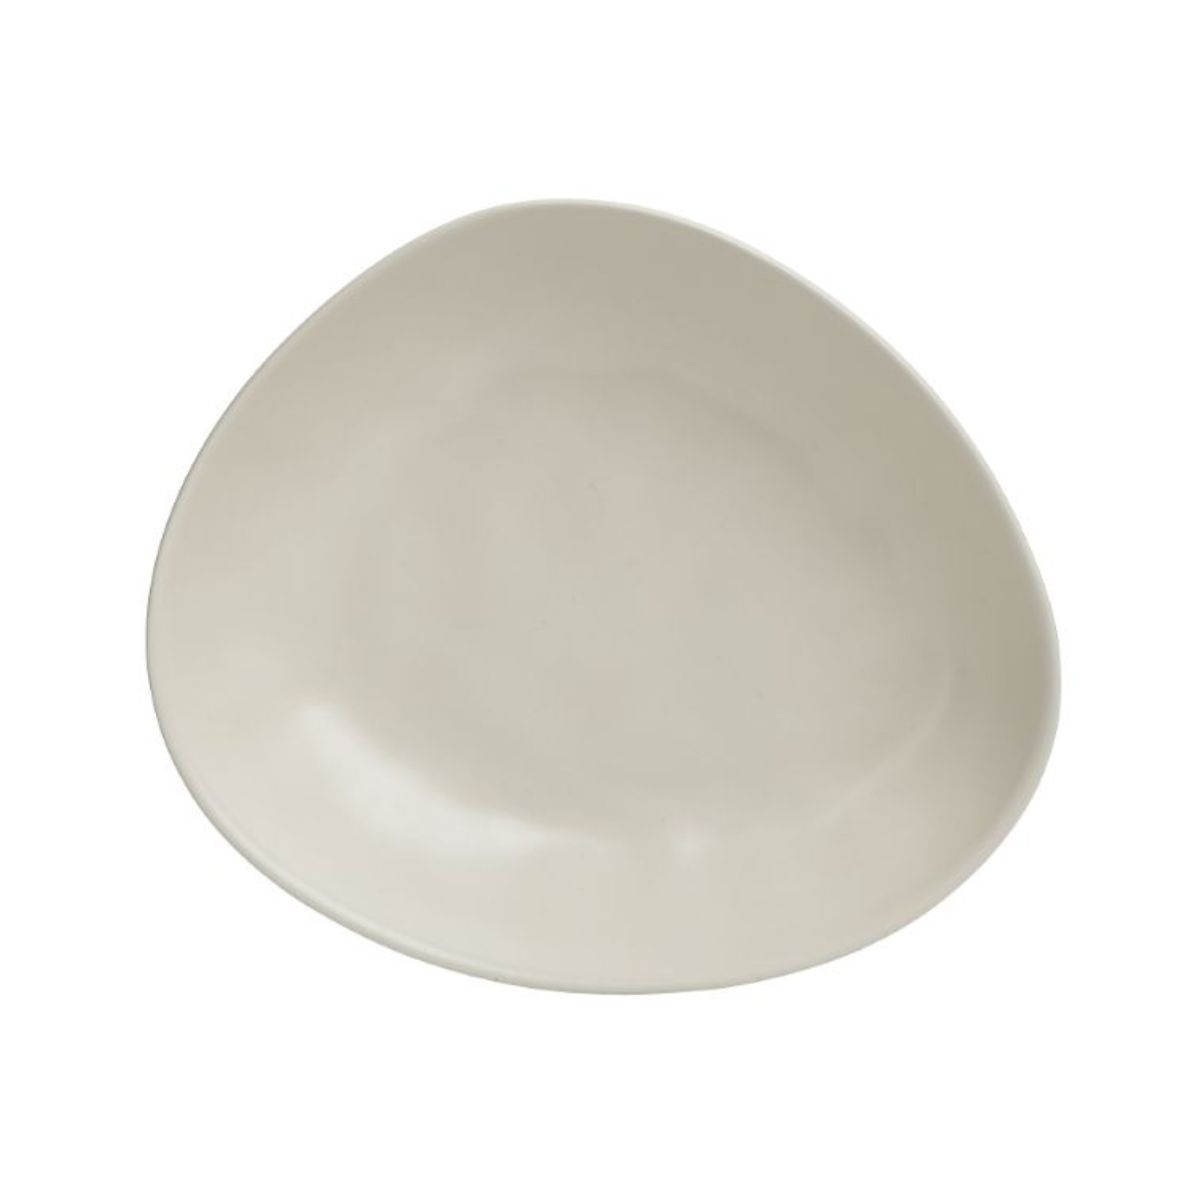 Bucatarie - Farfurie crem ceramica asimetrica 23X20X5 cm Inart, hectarul.ro